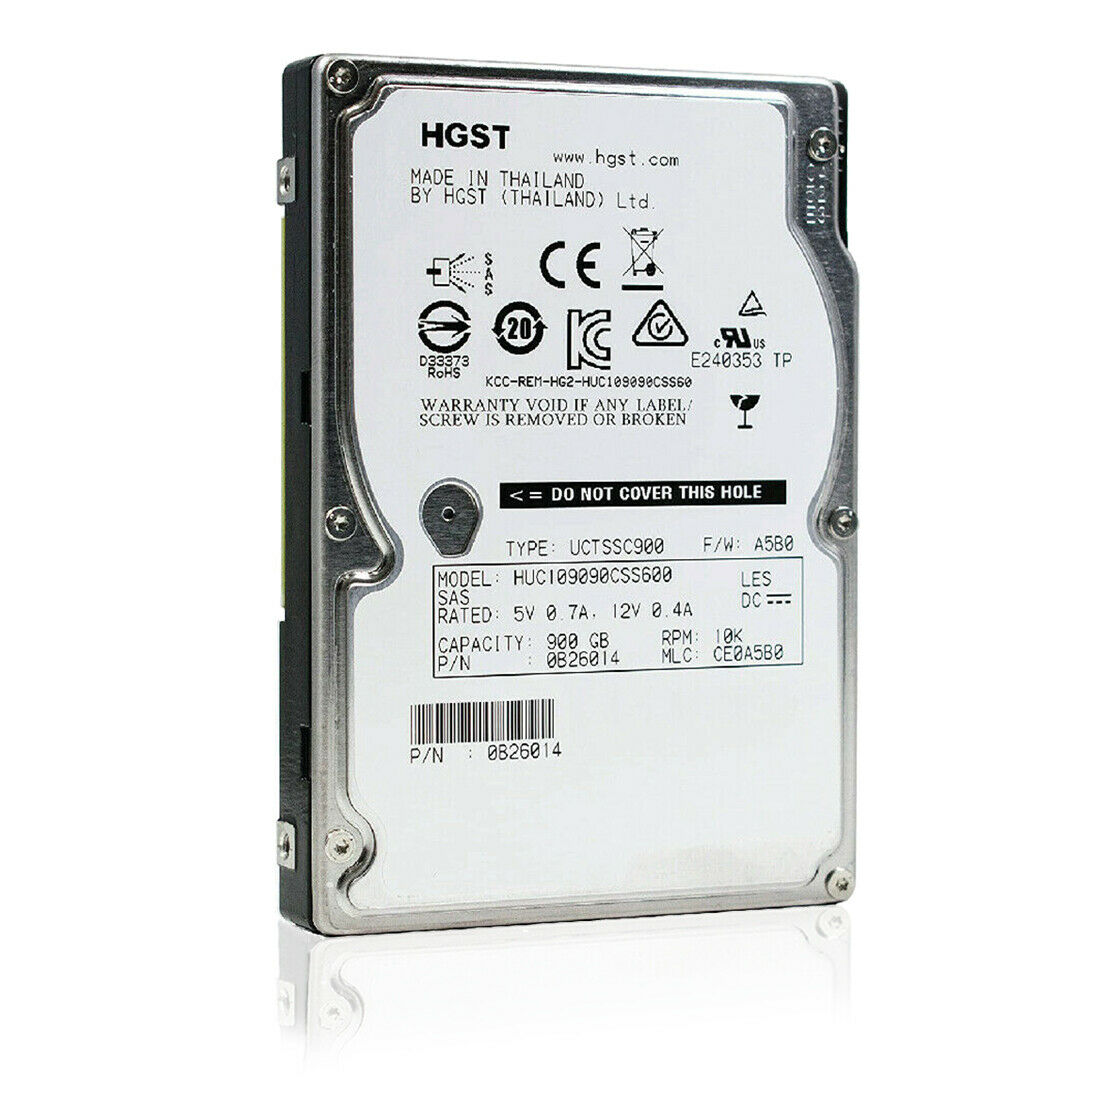 HGST 2.5" (SAS) Internal Hard Drive 900GB 10Krpm 64MB 0B26014, HUC109090CSS600